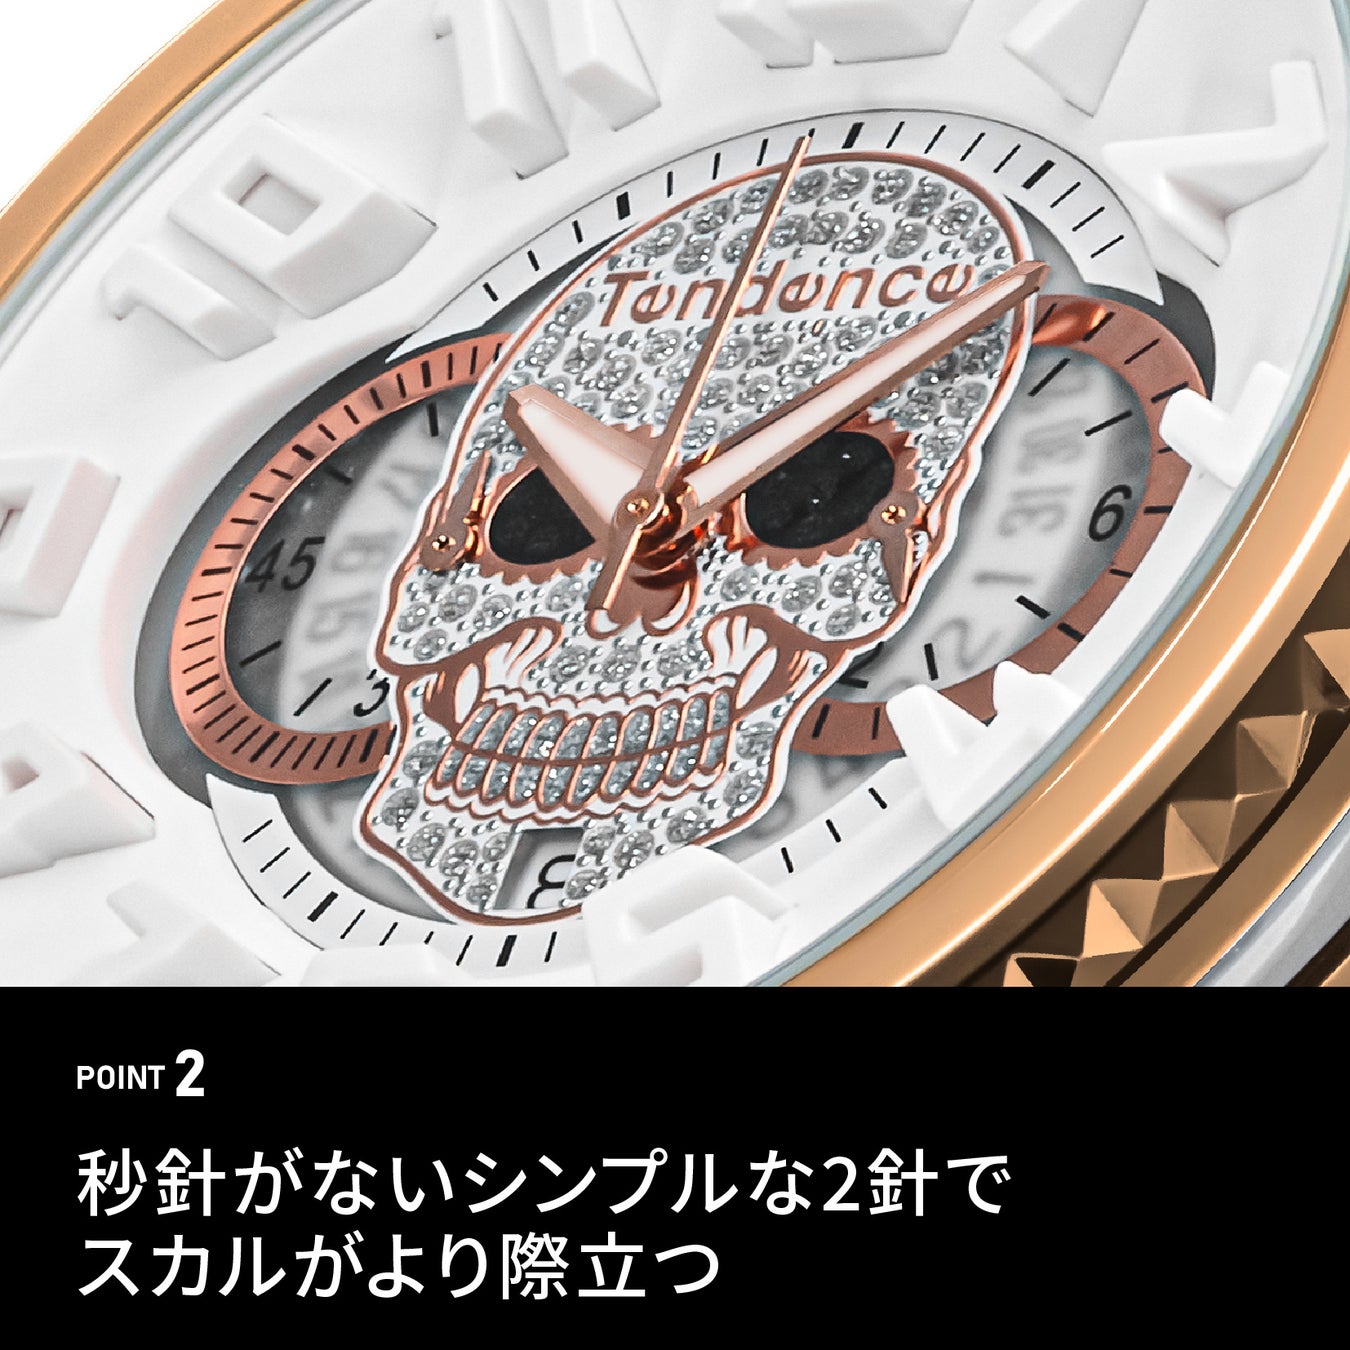 スイス生まれの腕時計ブランド「Tendence（テンデンス）」は文字盤中央にミステリアスなスカルを配置した「GULLIVER SKULL（ガリバースカル）」2種を10月13日(金)に先行発売します。